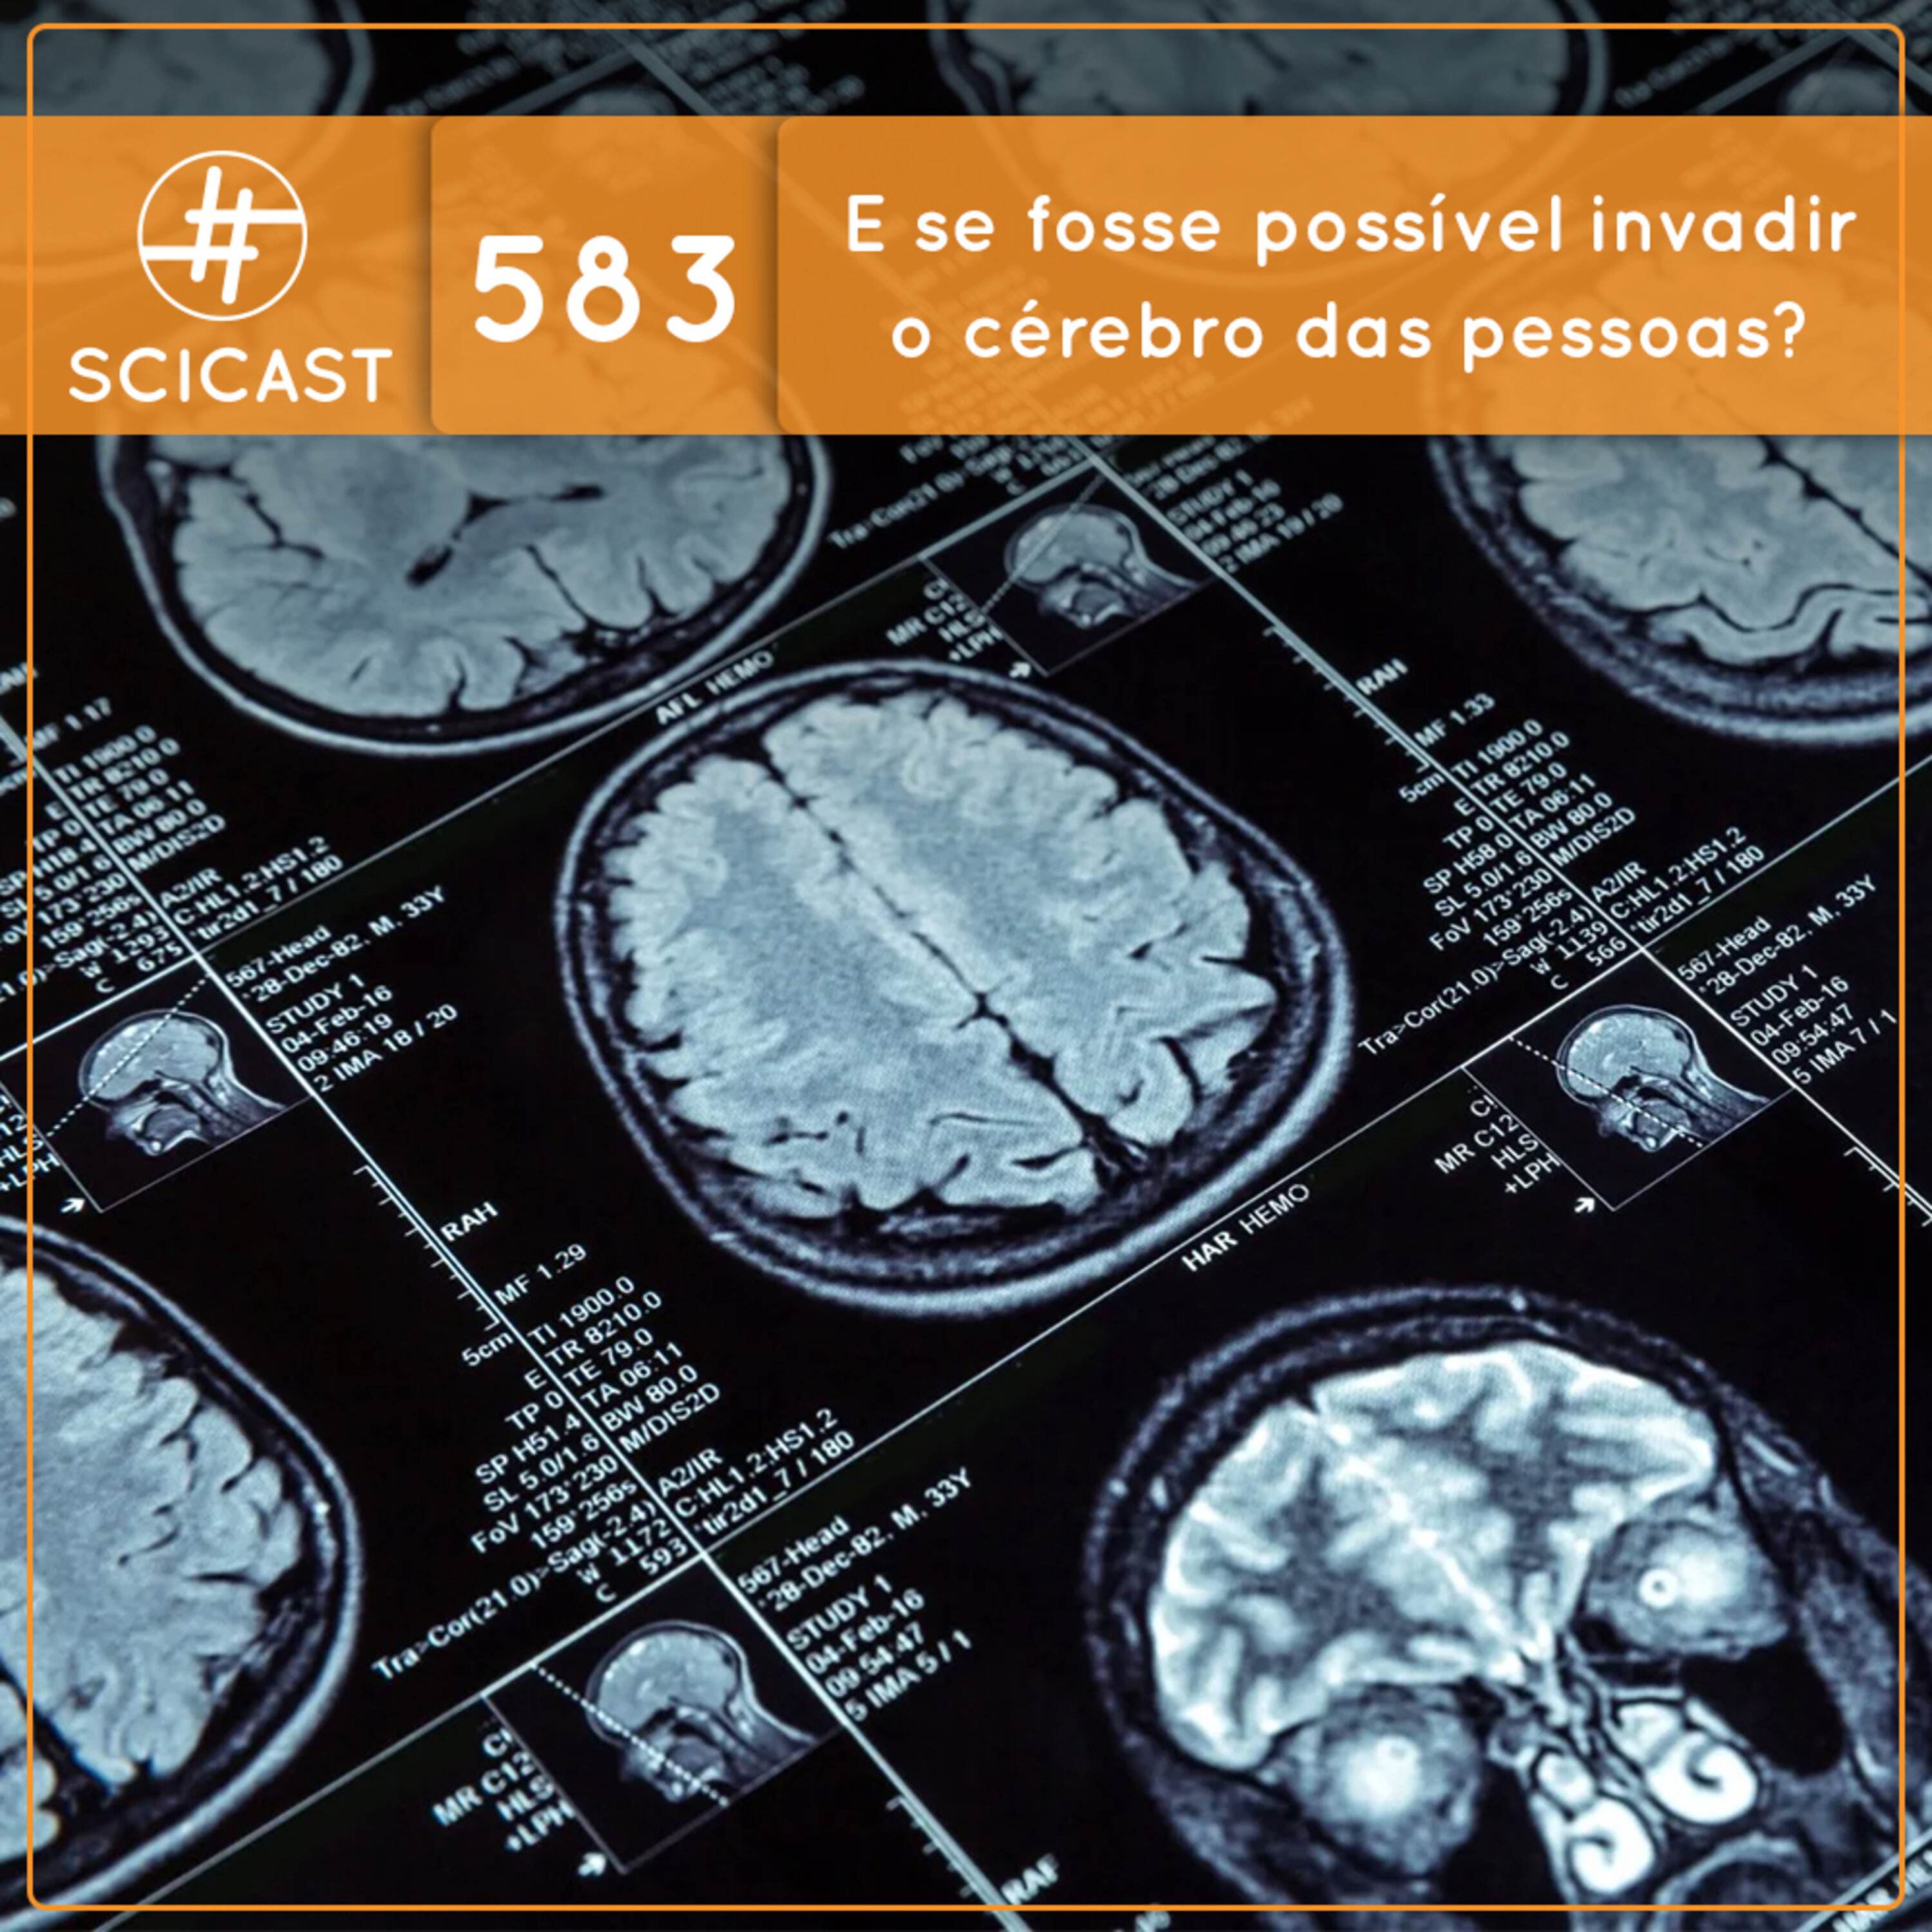 E se fosse possível invadir o cérebro das pessoas? (SciCast #583)